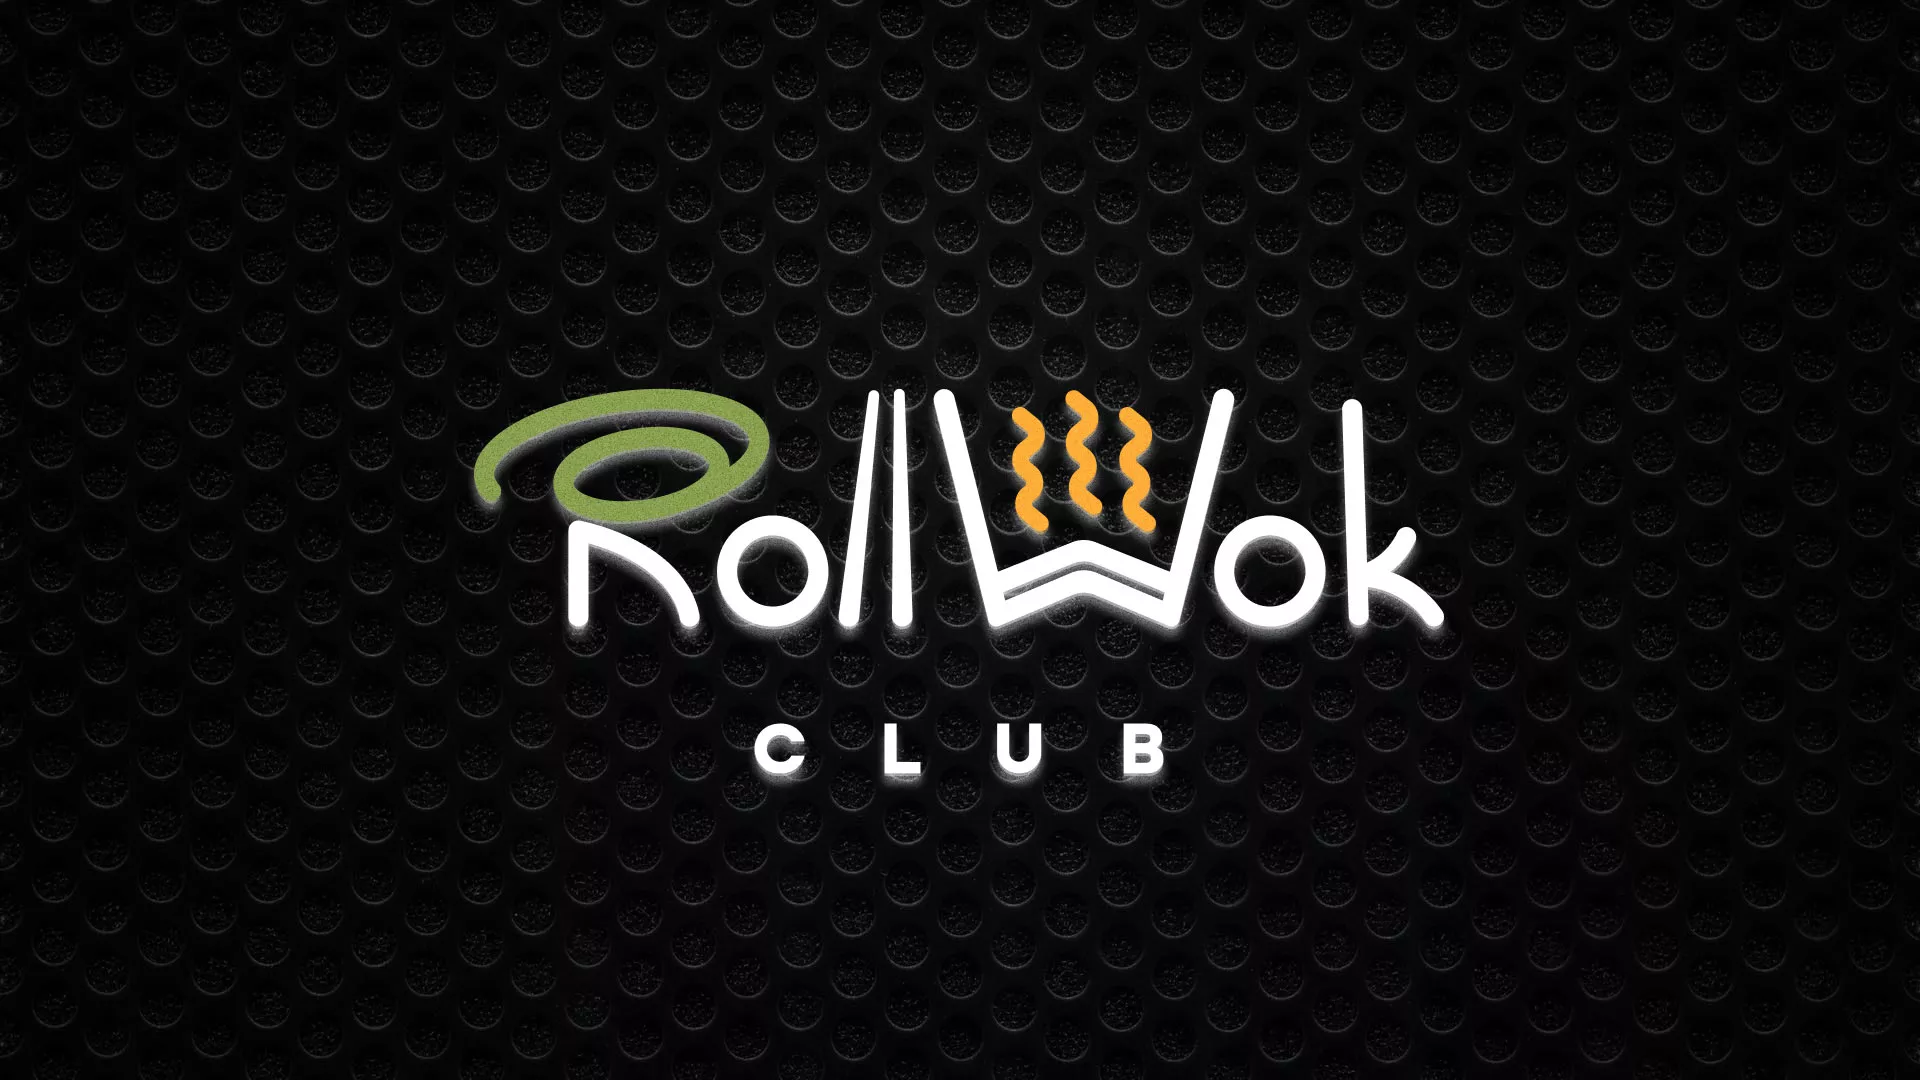 Брендирование торговых точек суши-бара «Roll Wok Club» в Болхове